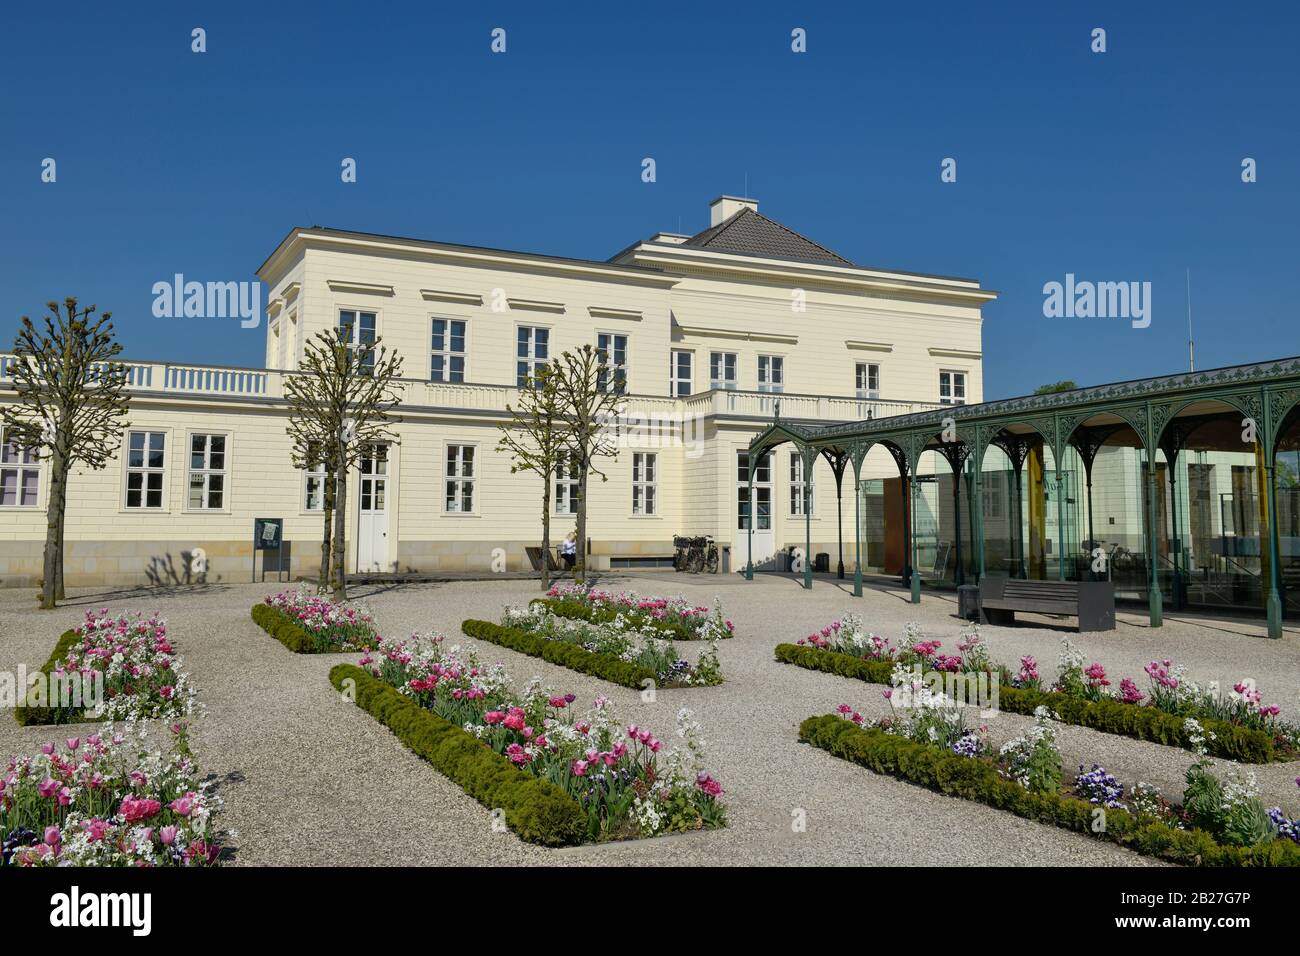 Tulpenbeete, Schloß, Großer Garten, Herrenhäuser Gärten, Hannover, Niedersachsen, Deutschland Stock Photo